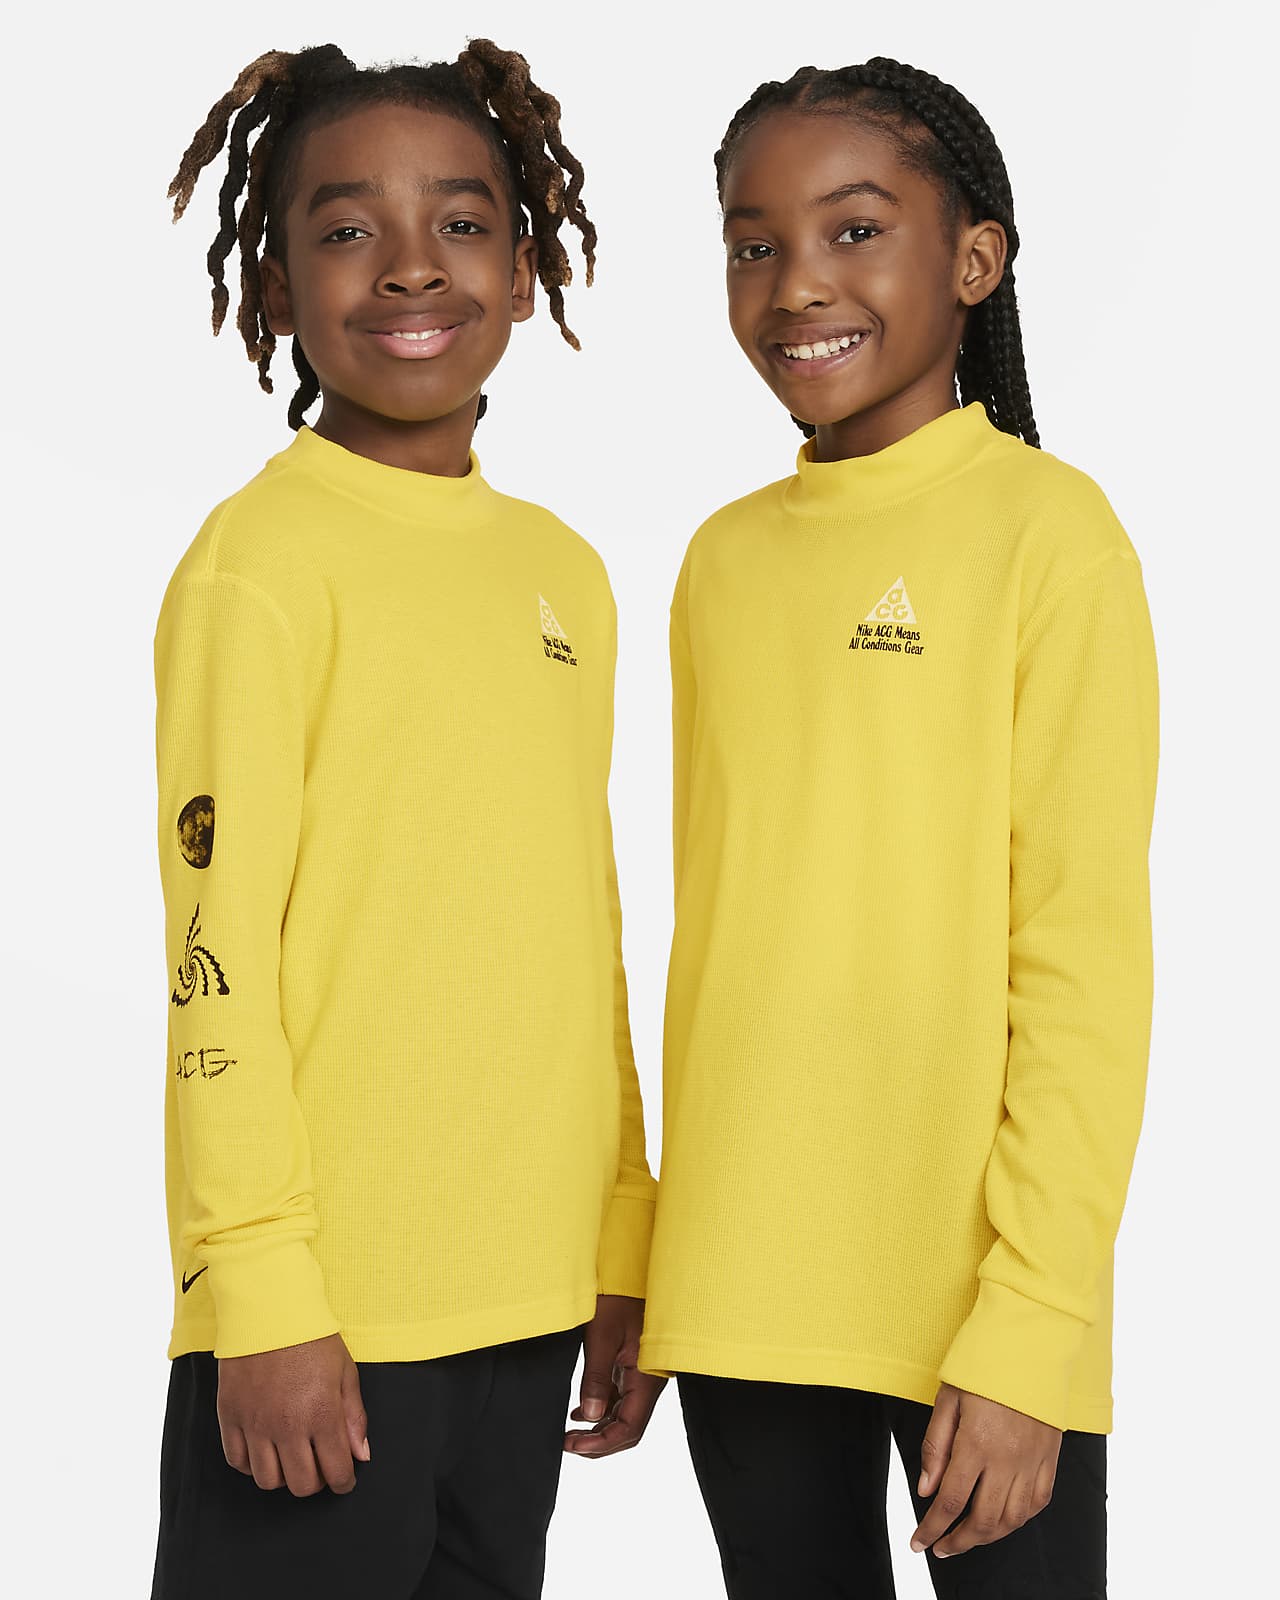 Μακρυμάνικη μπλούζα από πικέ ύφασμα σε ριχτή γραμμή Nike ACG για μεγάλα παιδιά